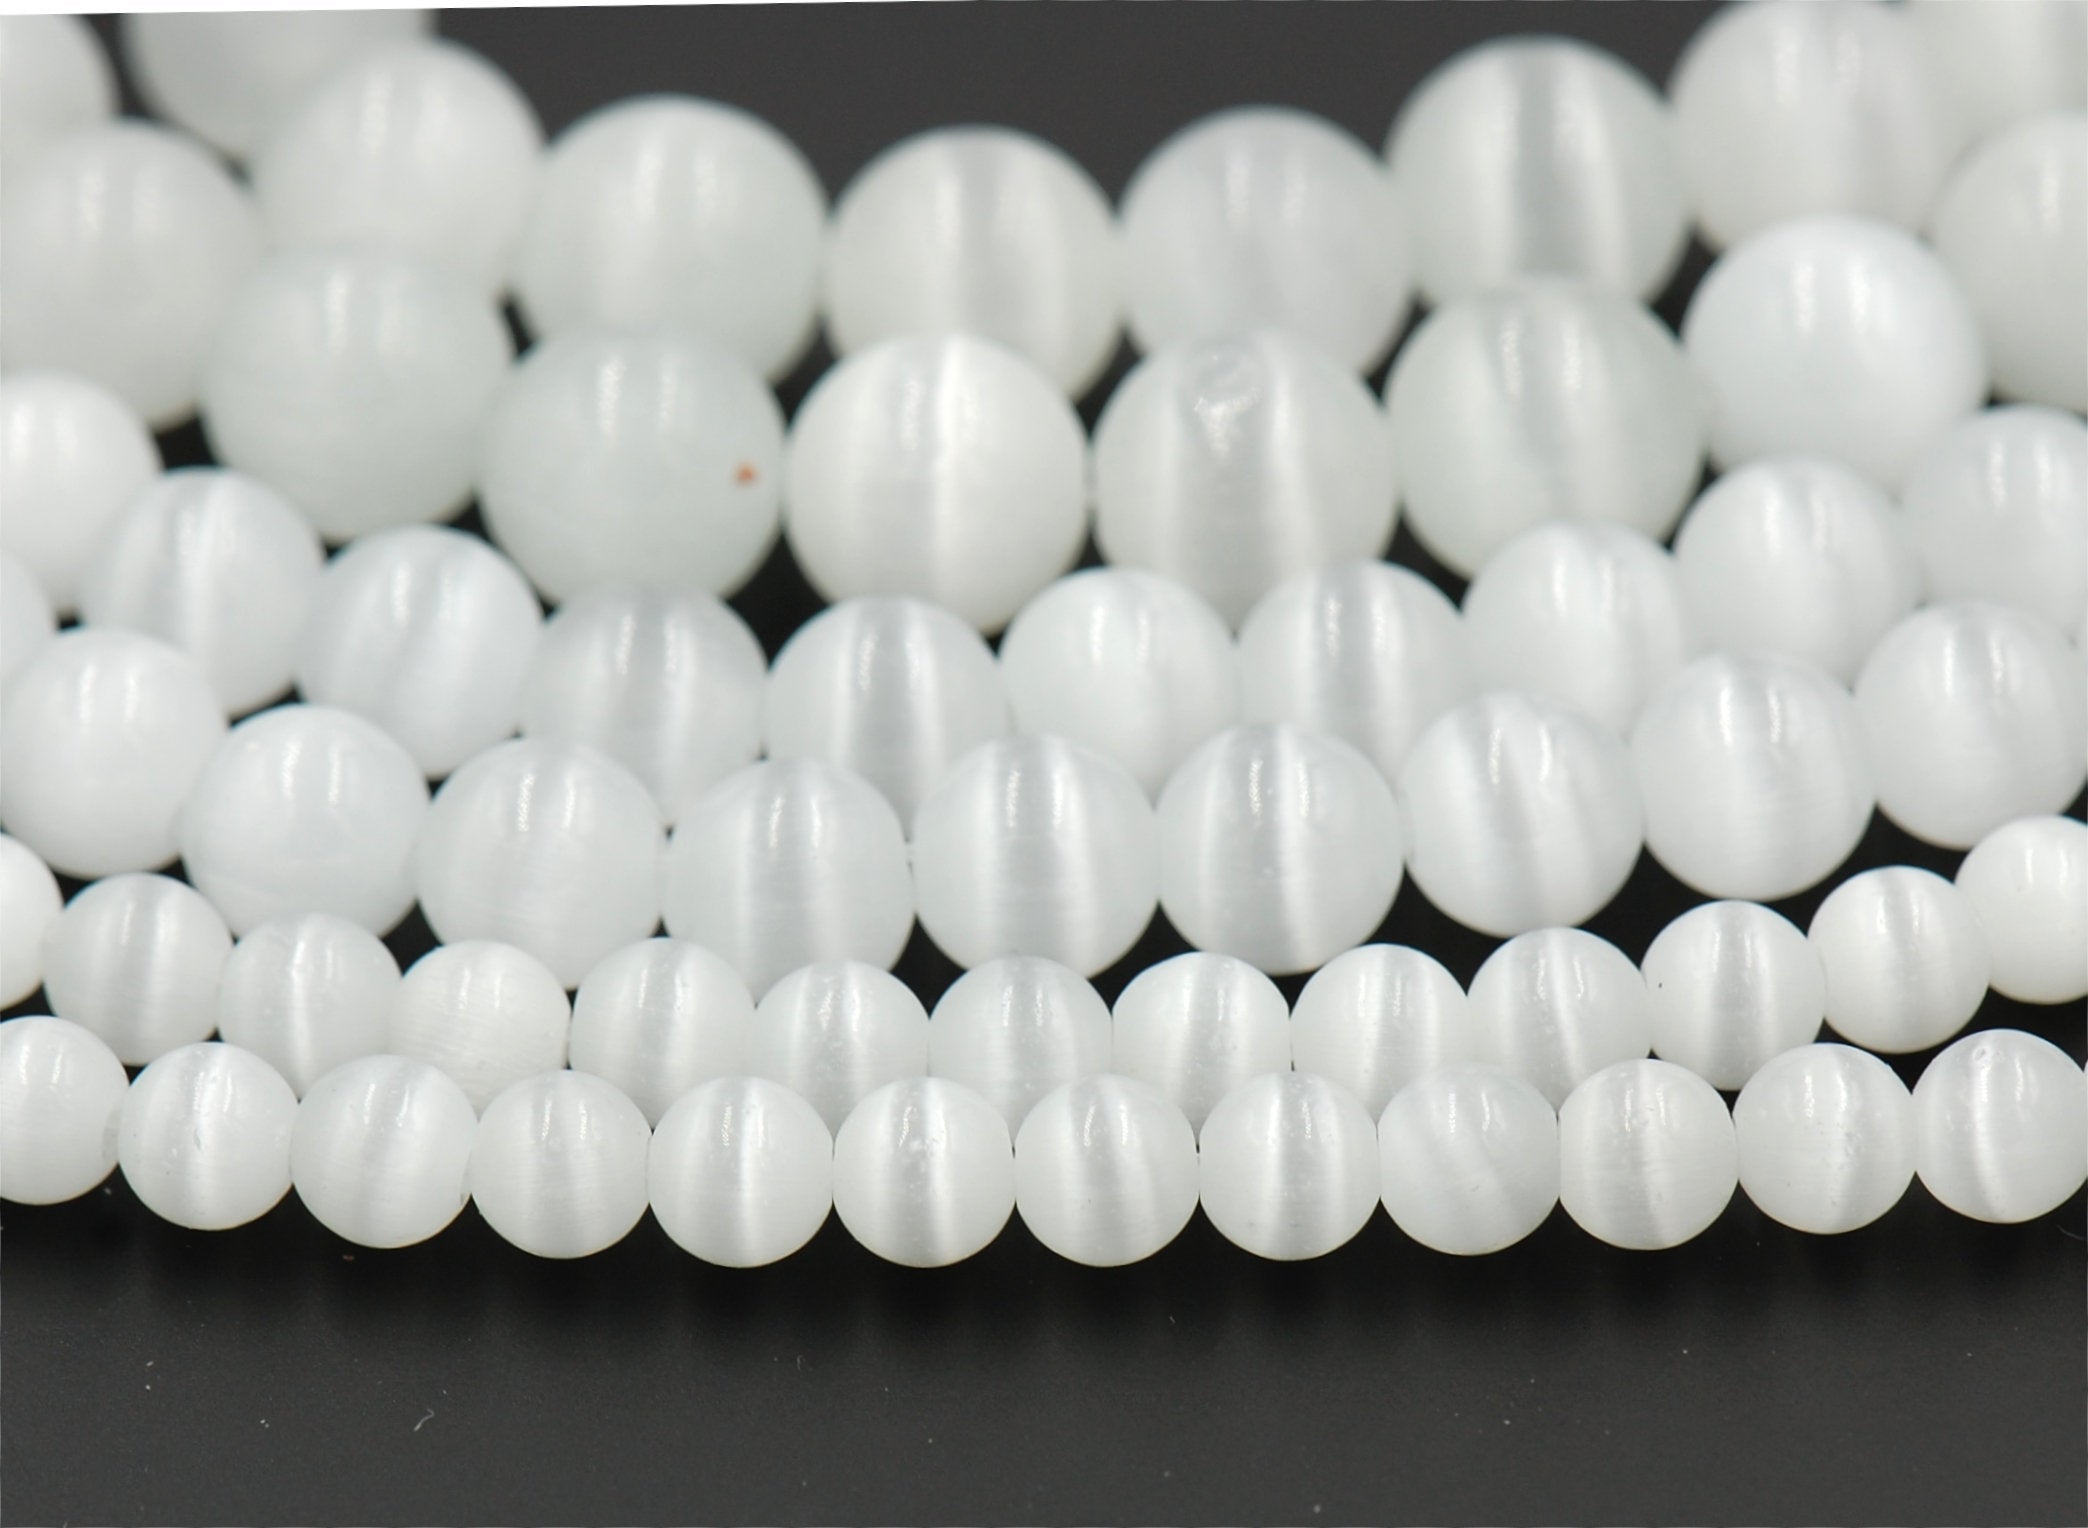 Cat Eye Beads White 4mm, 6mm, 8mm, 10mm, 12mm  -14.5 inch strand